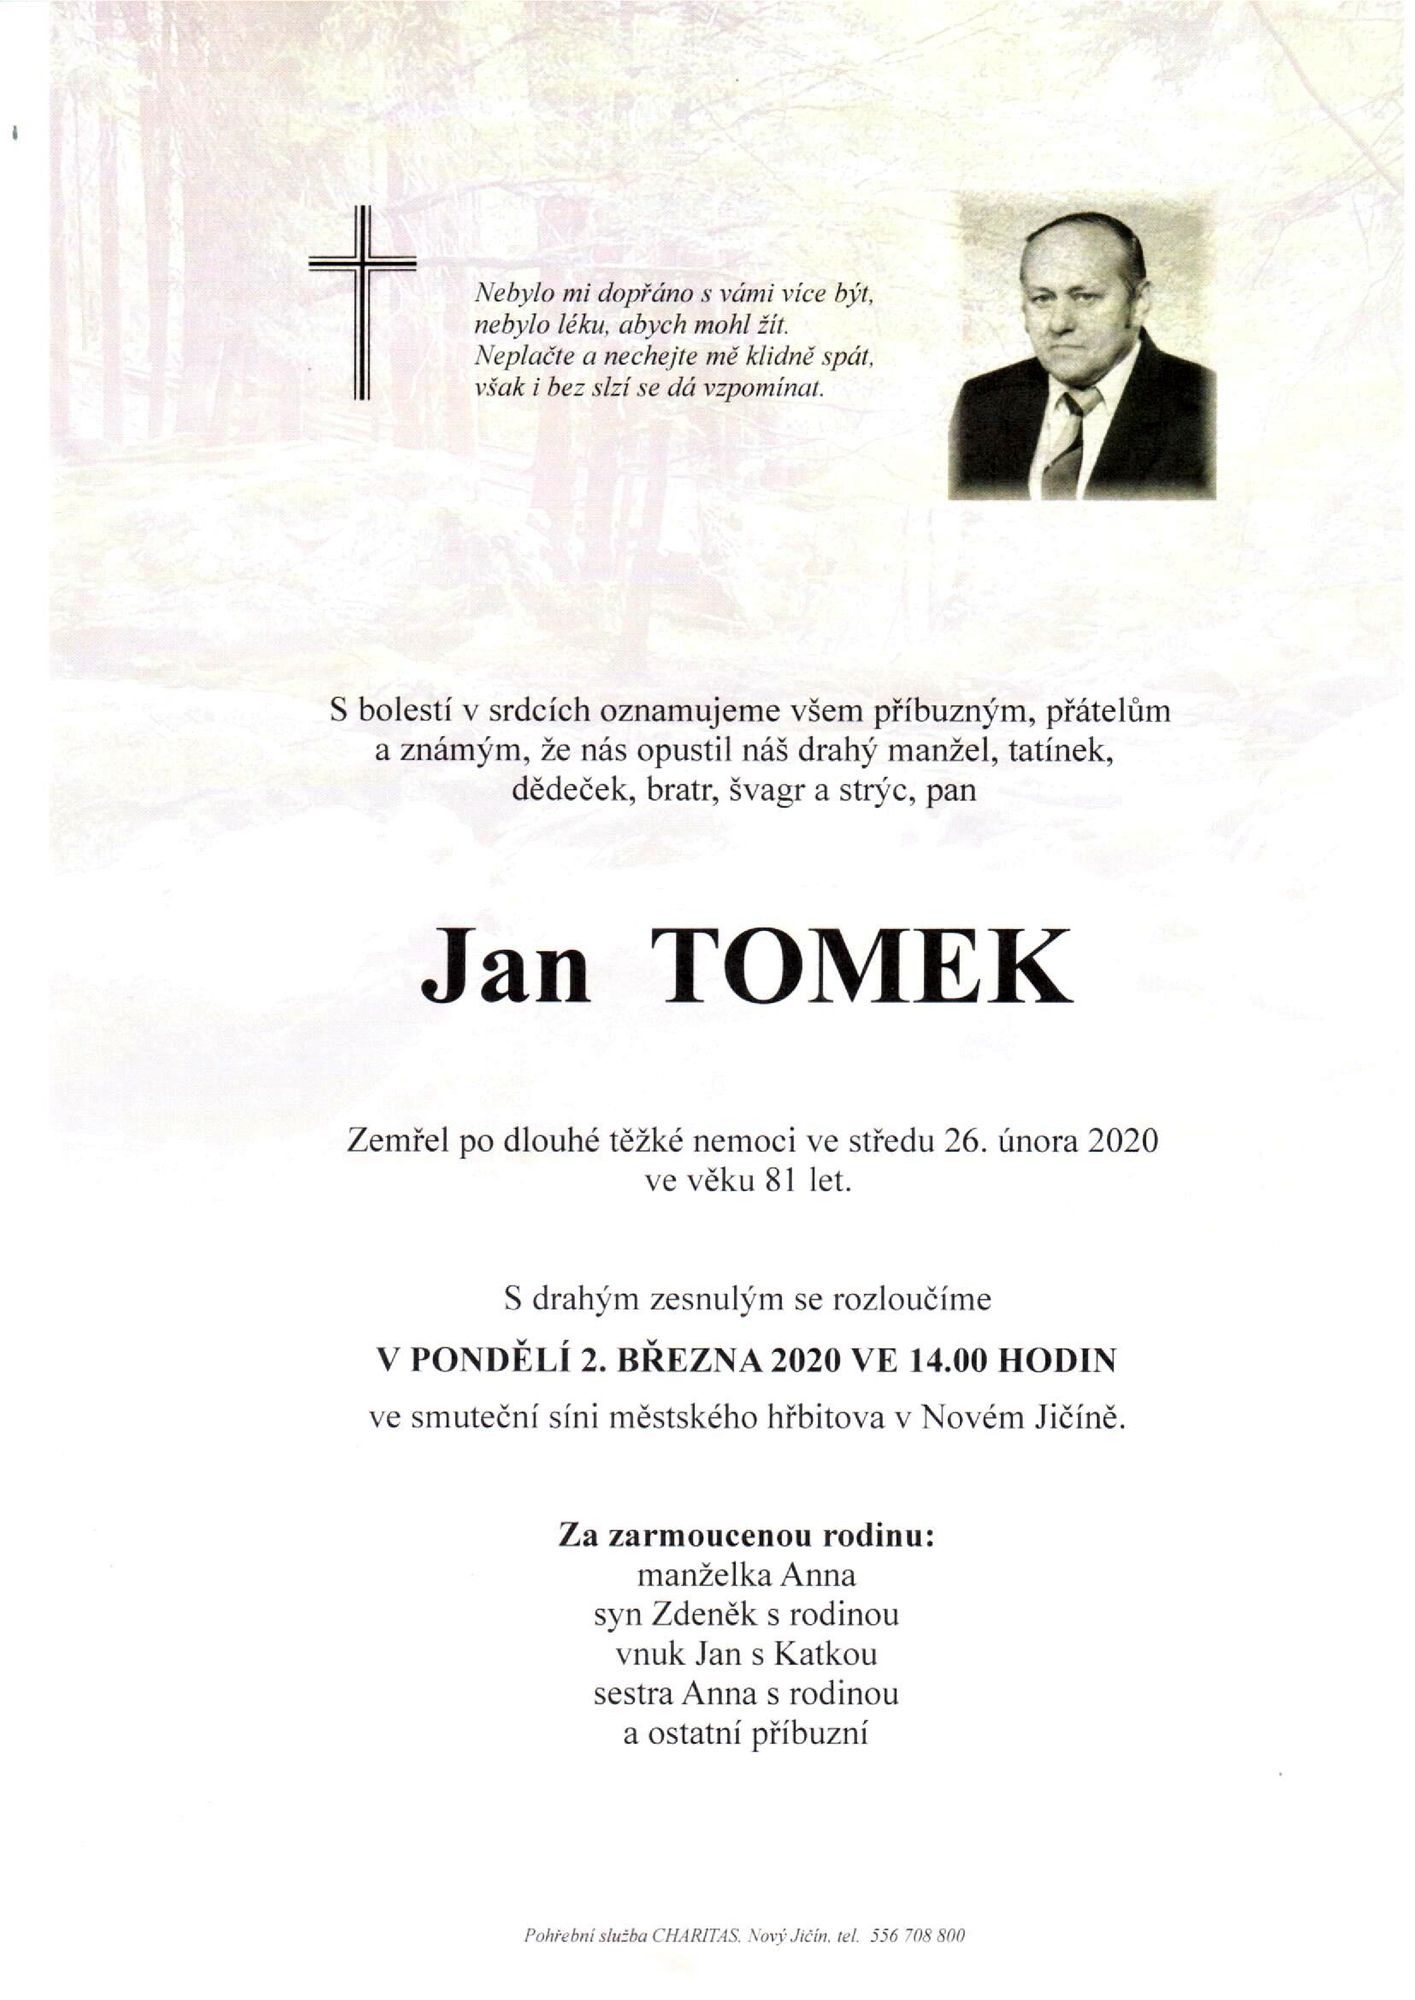 Jan Tomek